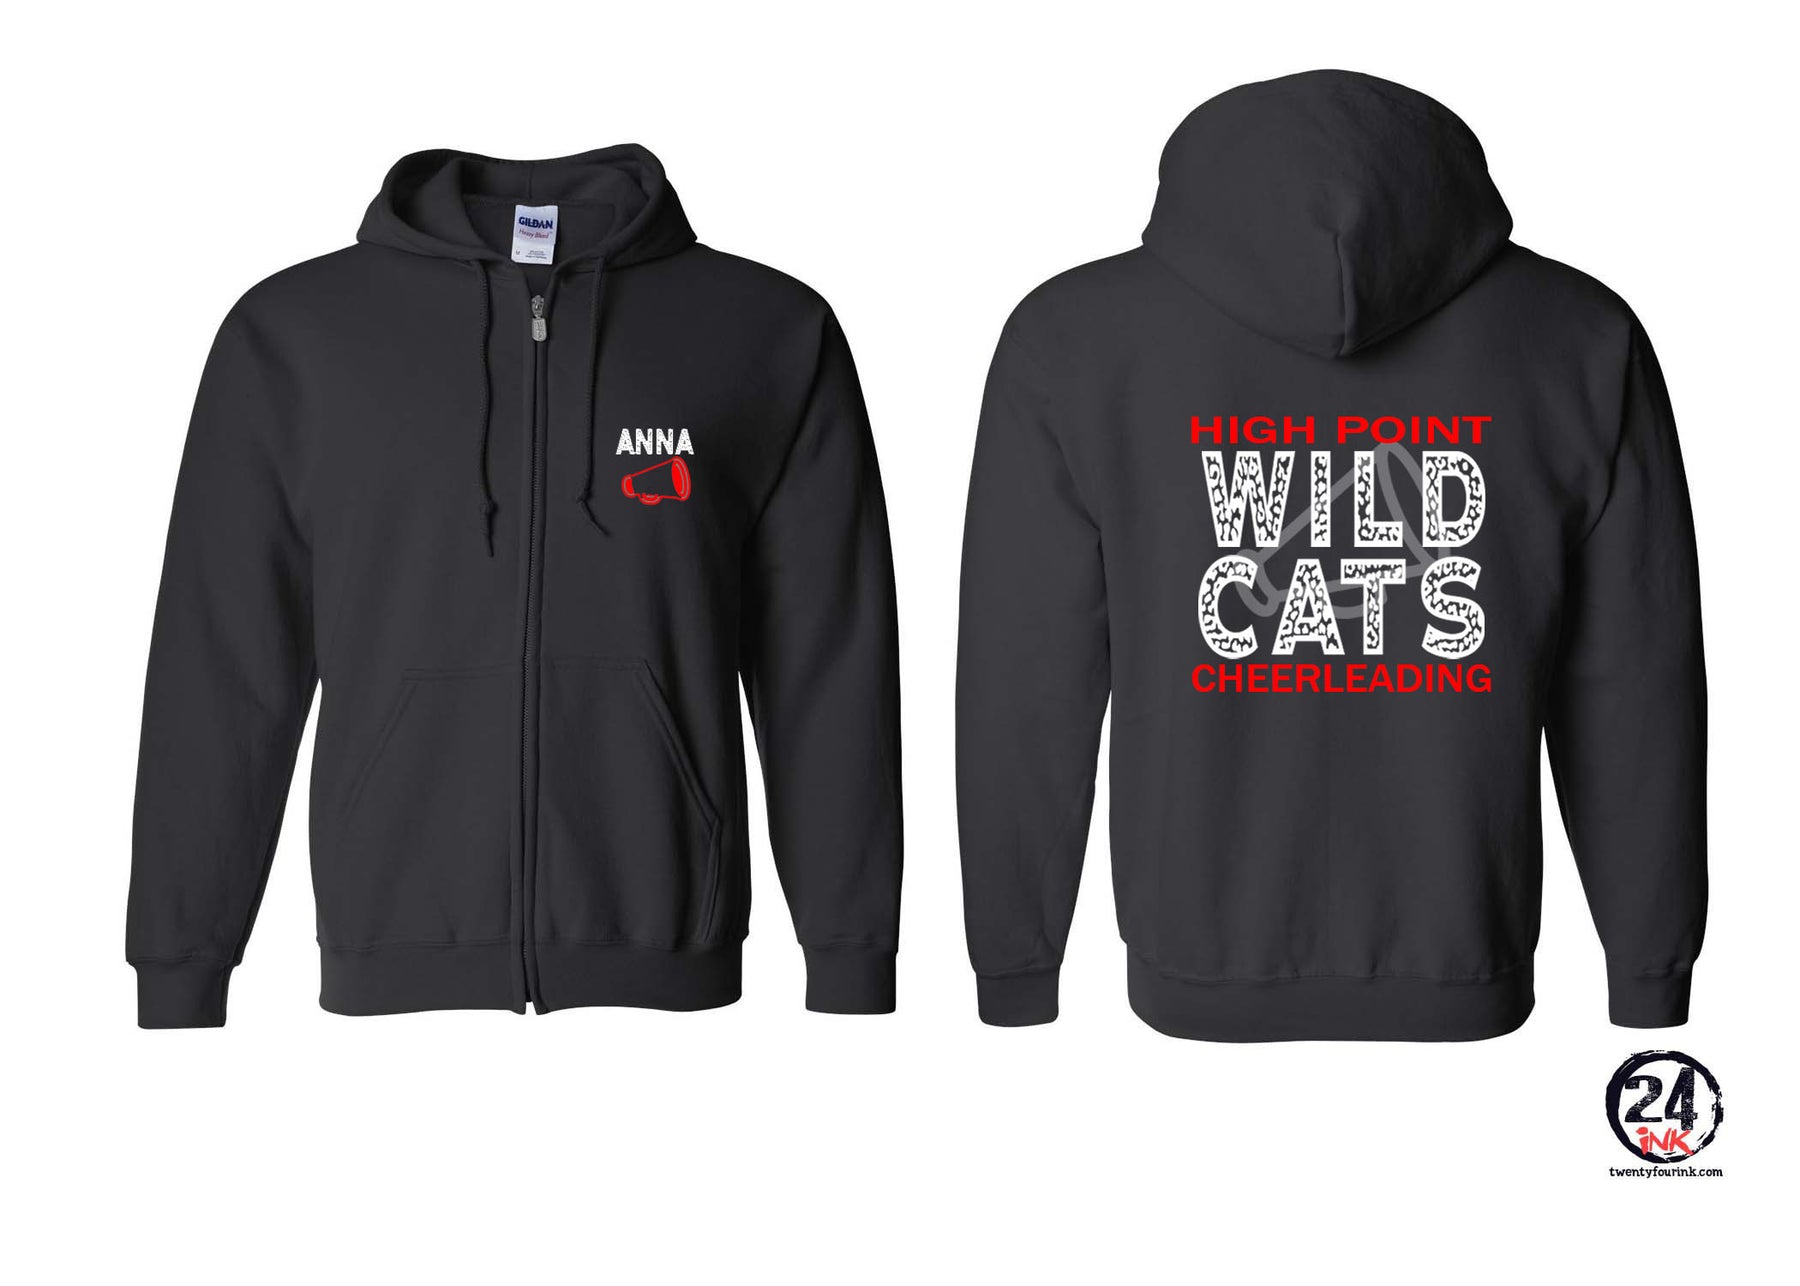 Wildcats Cheer design 1 Zip up Sweatshirt